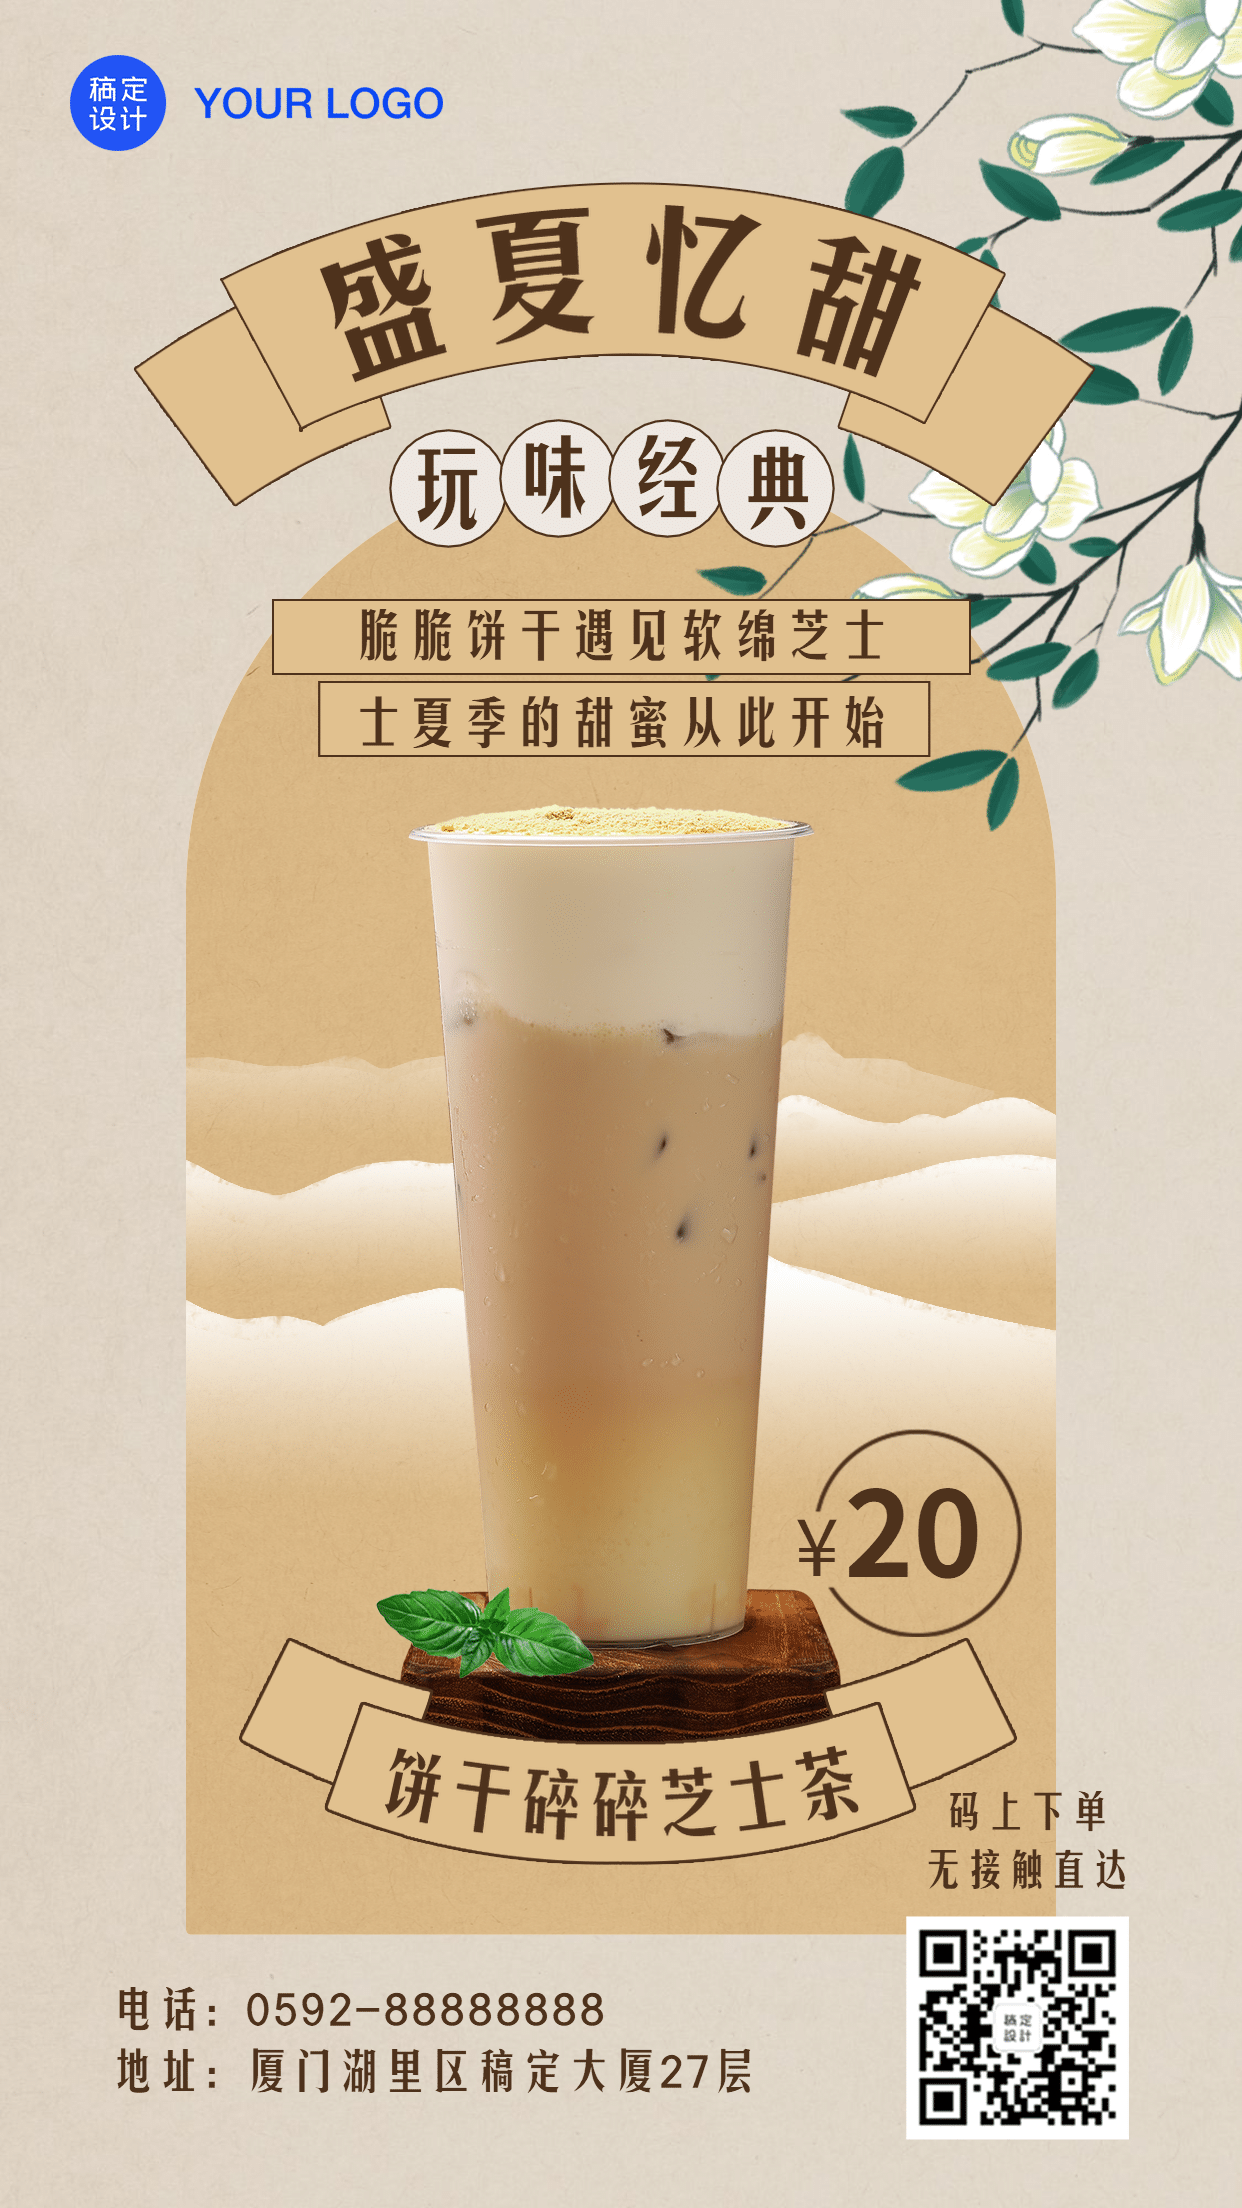 中国风复古饮料新品推荐海报预览效果